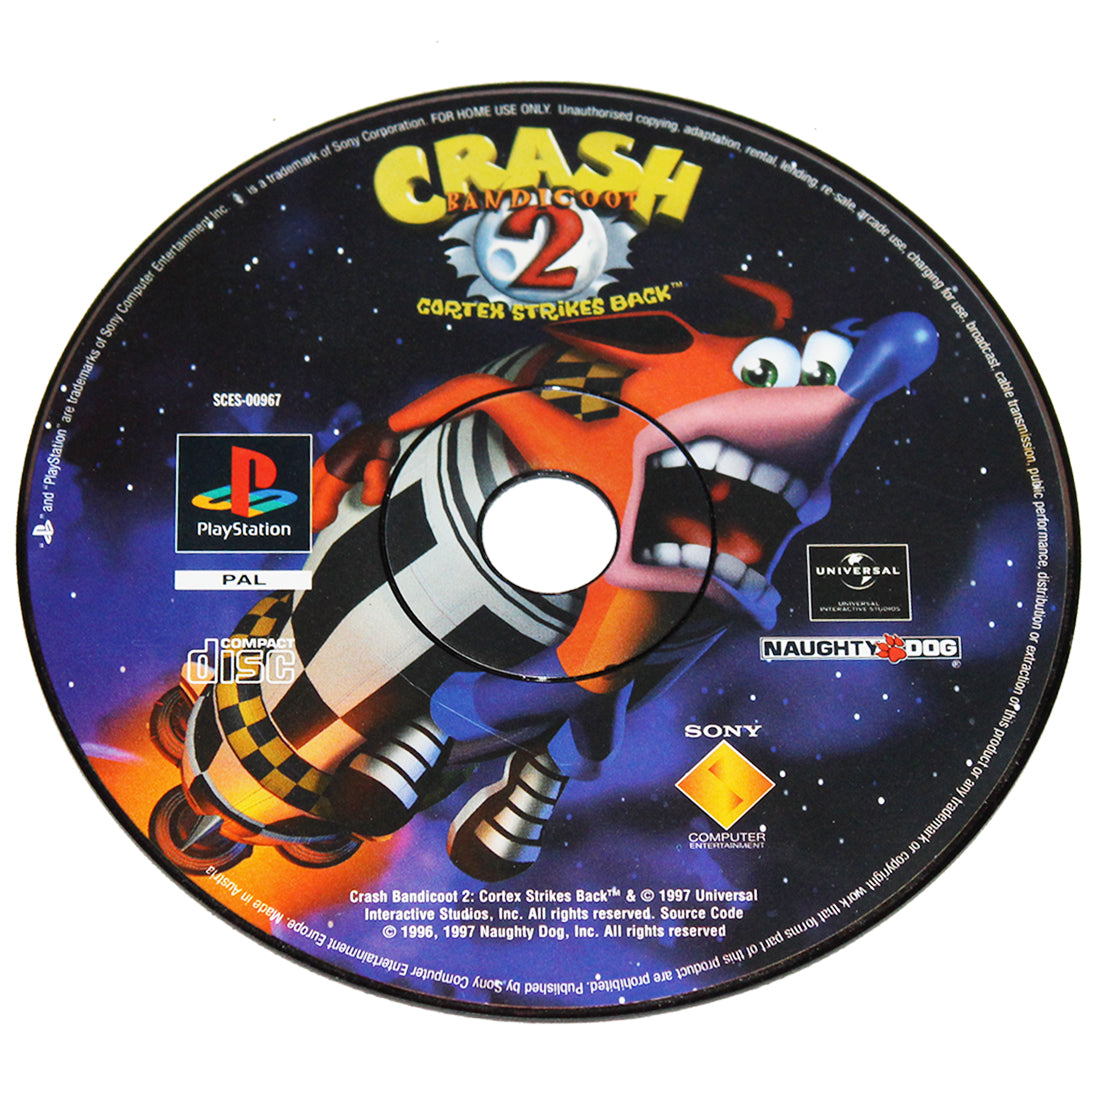 Jeu vidéo Playstation PS1 Crash Bandicoot 2 disque seul